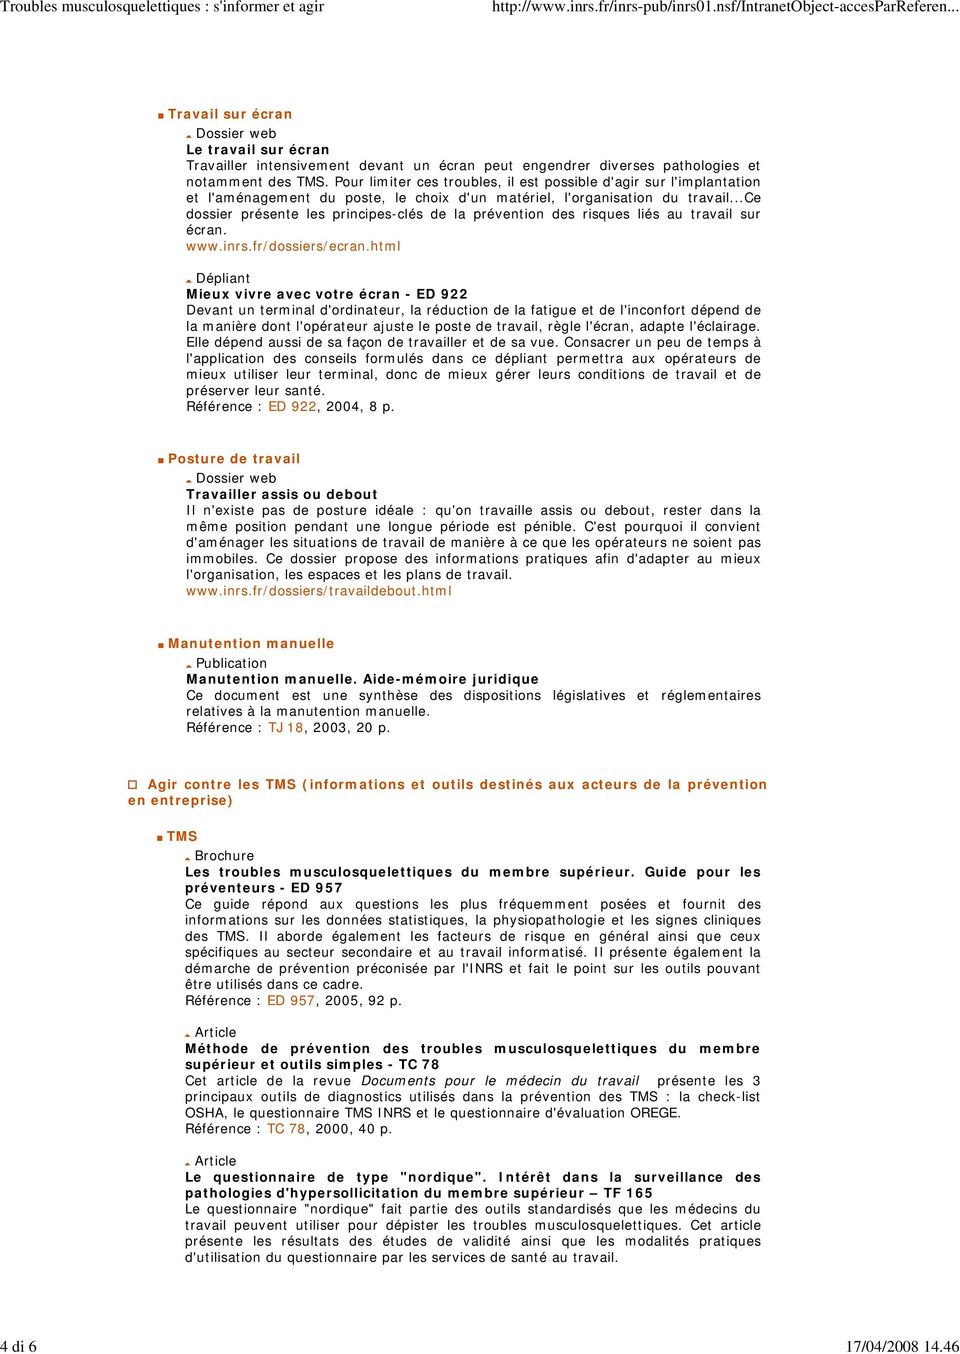 ..ce dossier présente les principes-clés de la prévention des risques liés au travail sur écran. www.inrs.fr/dossiers/ecran.